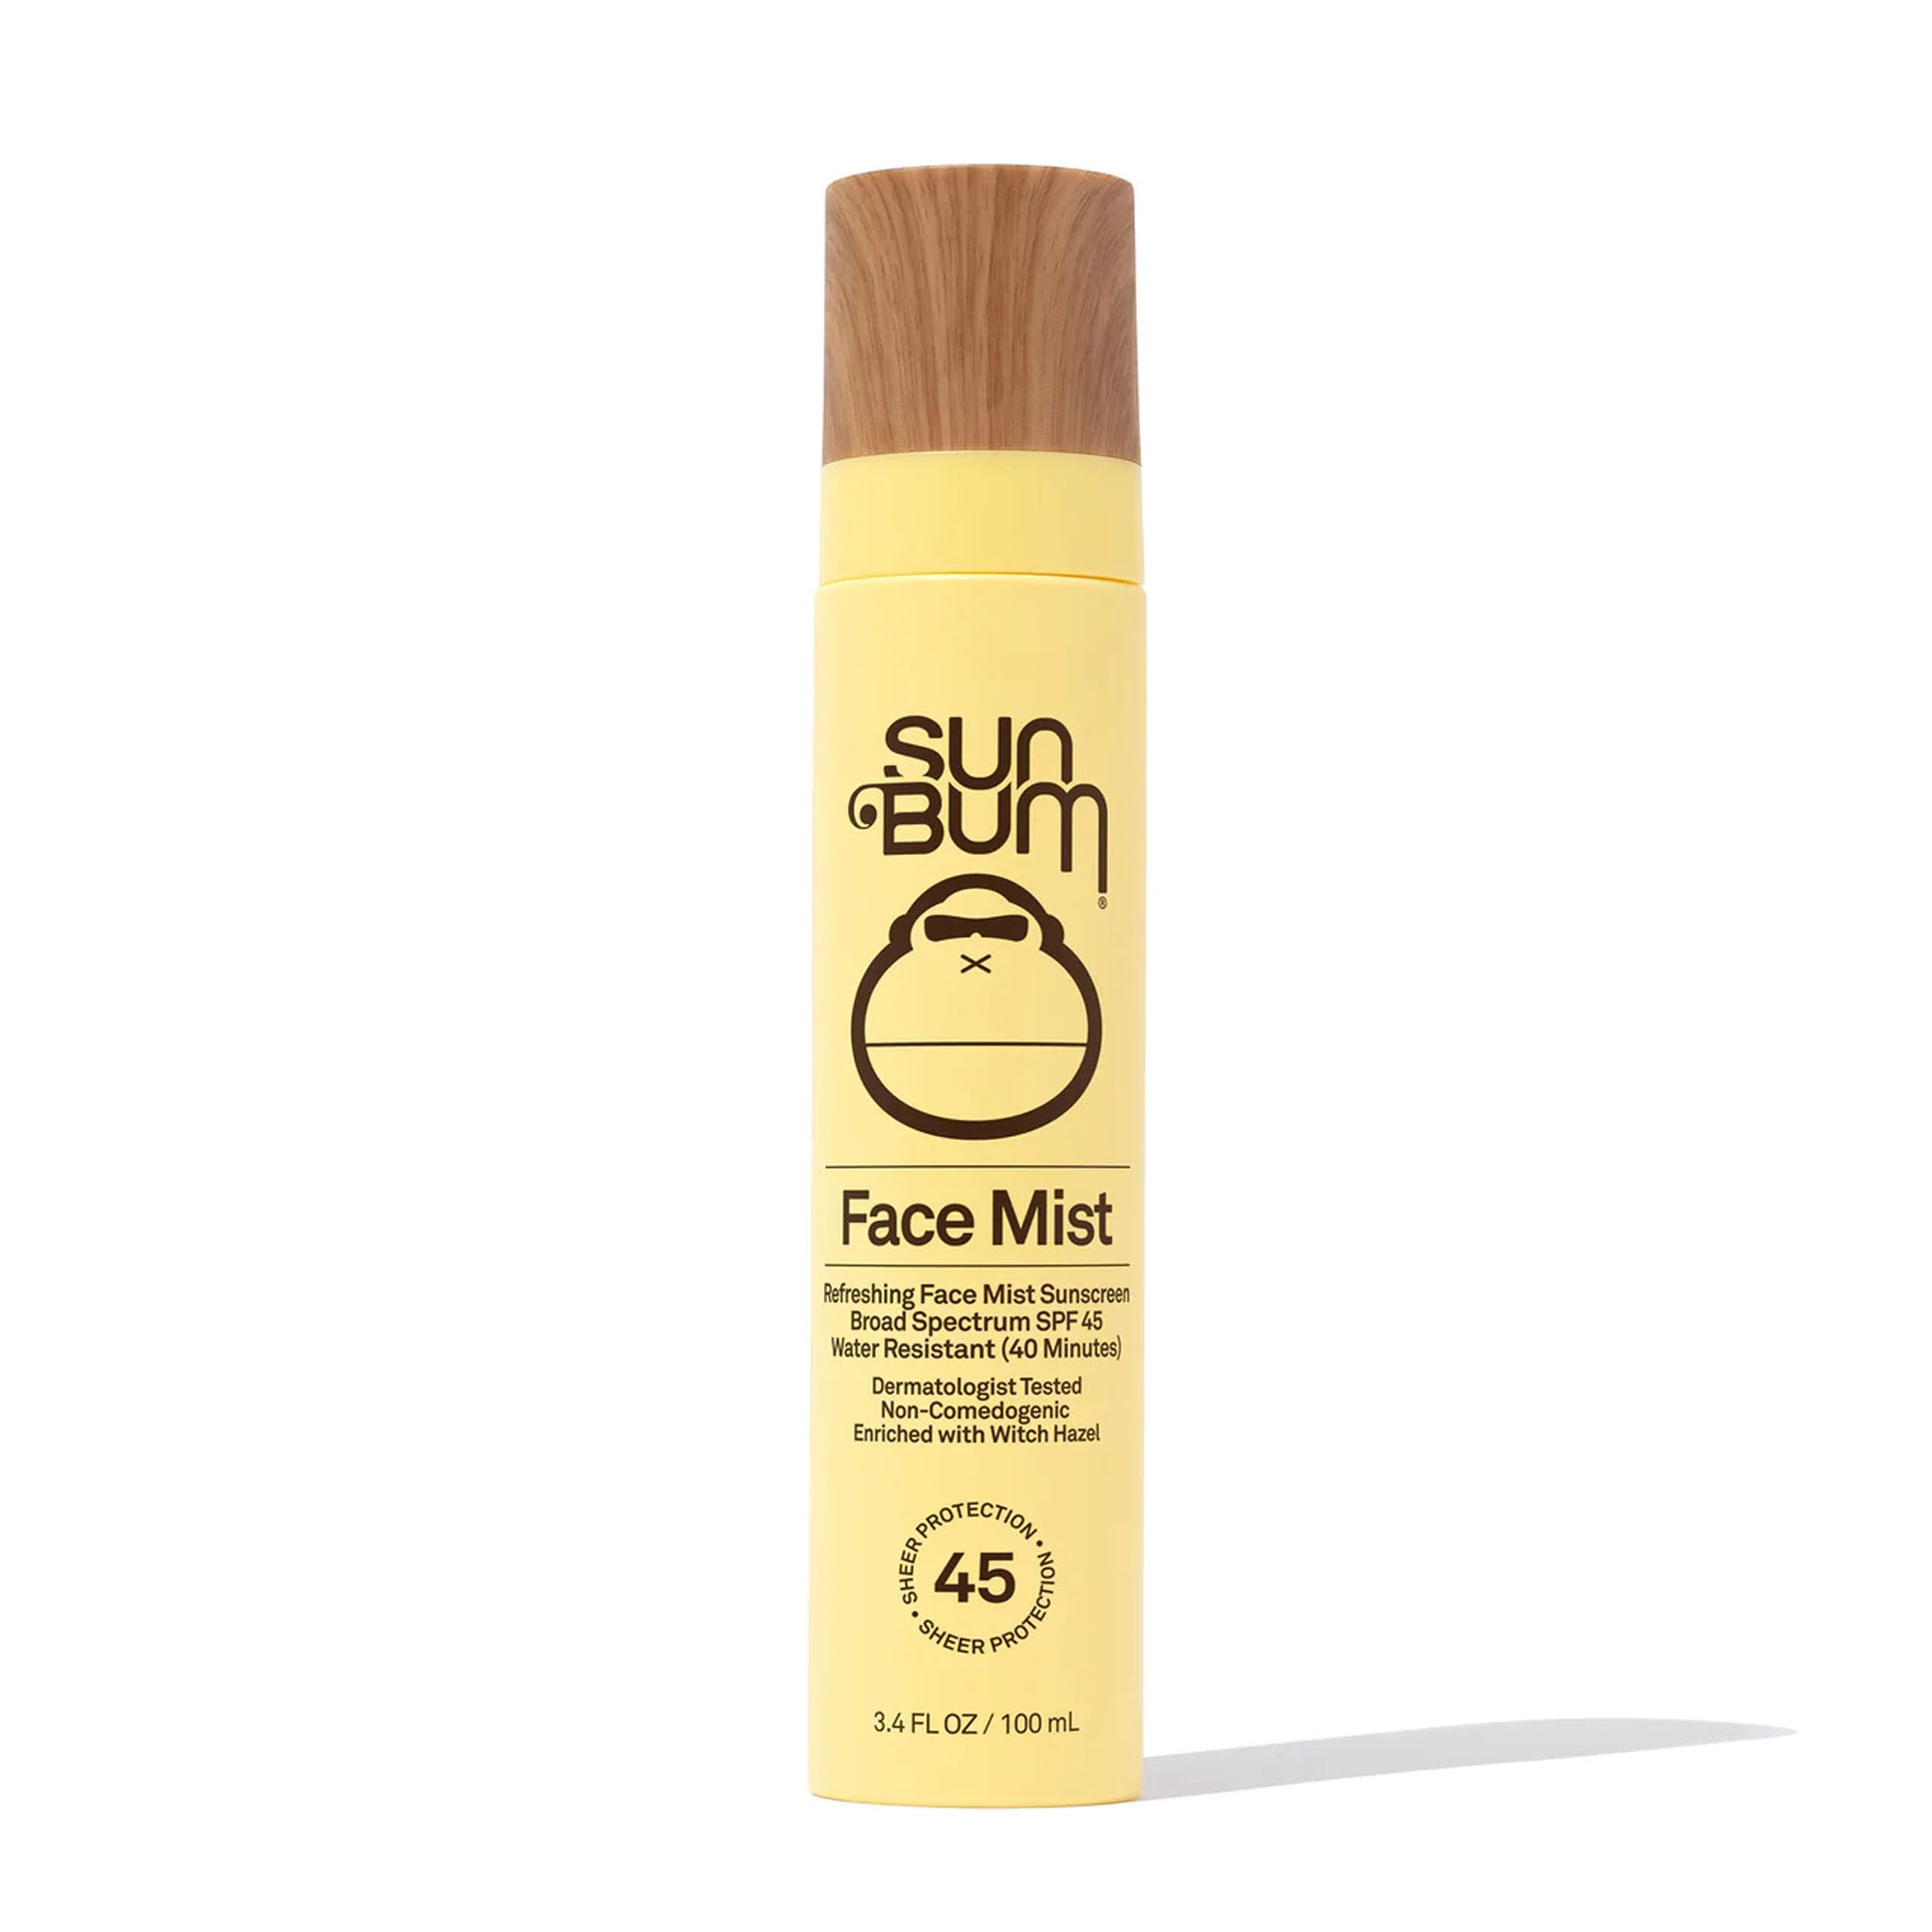 Sun Bum Original SPF 45 Face Mist Sunscreen